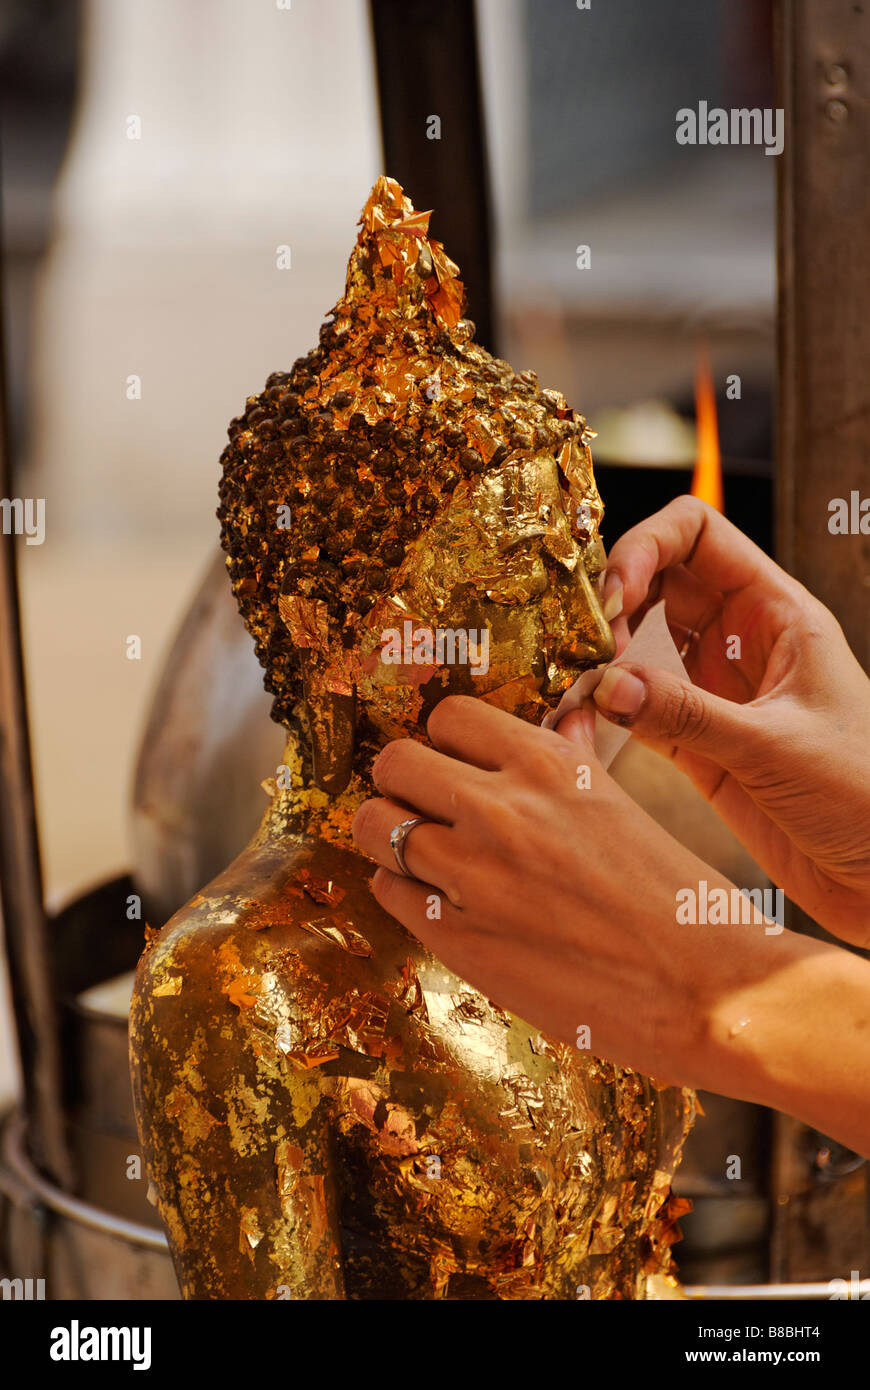 Personne qui demande la feuille d'or des offrandes à un bouddha statue - Wat Phra Kaew et le Grand Palais dans le centre de Bangkok en Thaïlande Banque D'Images